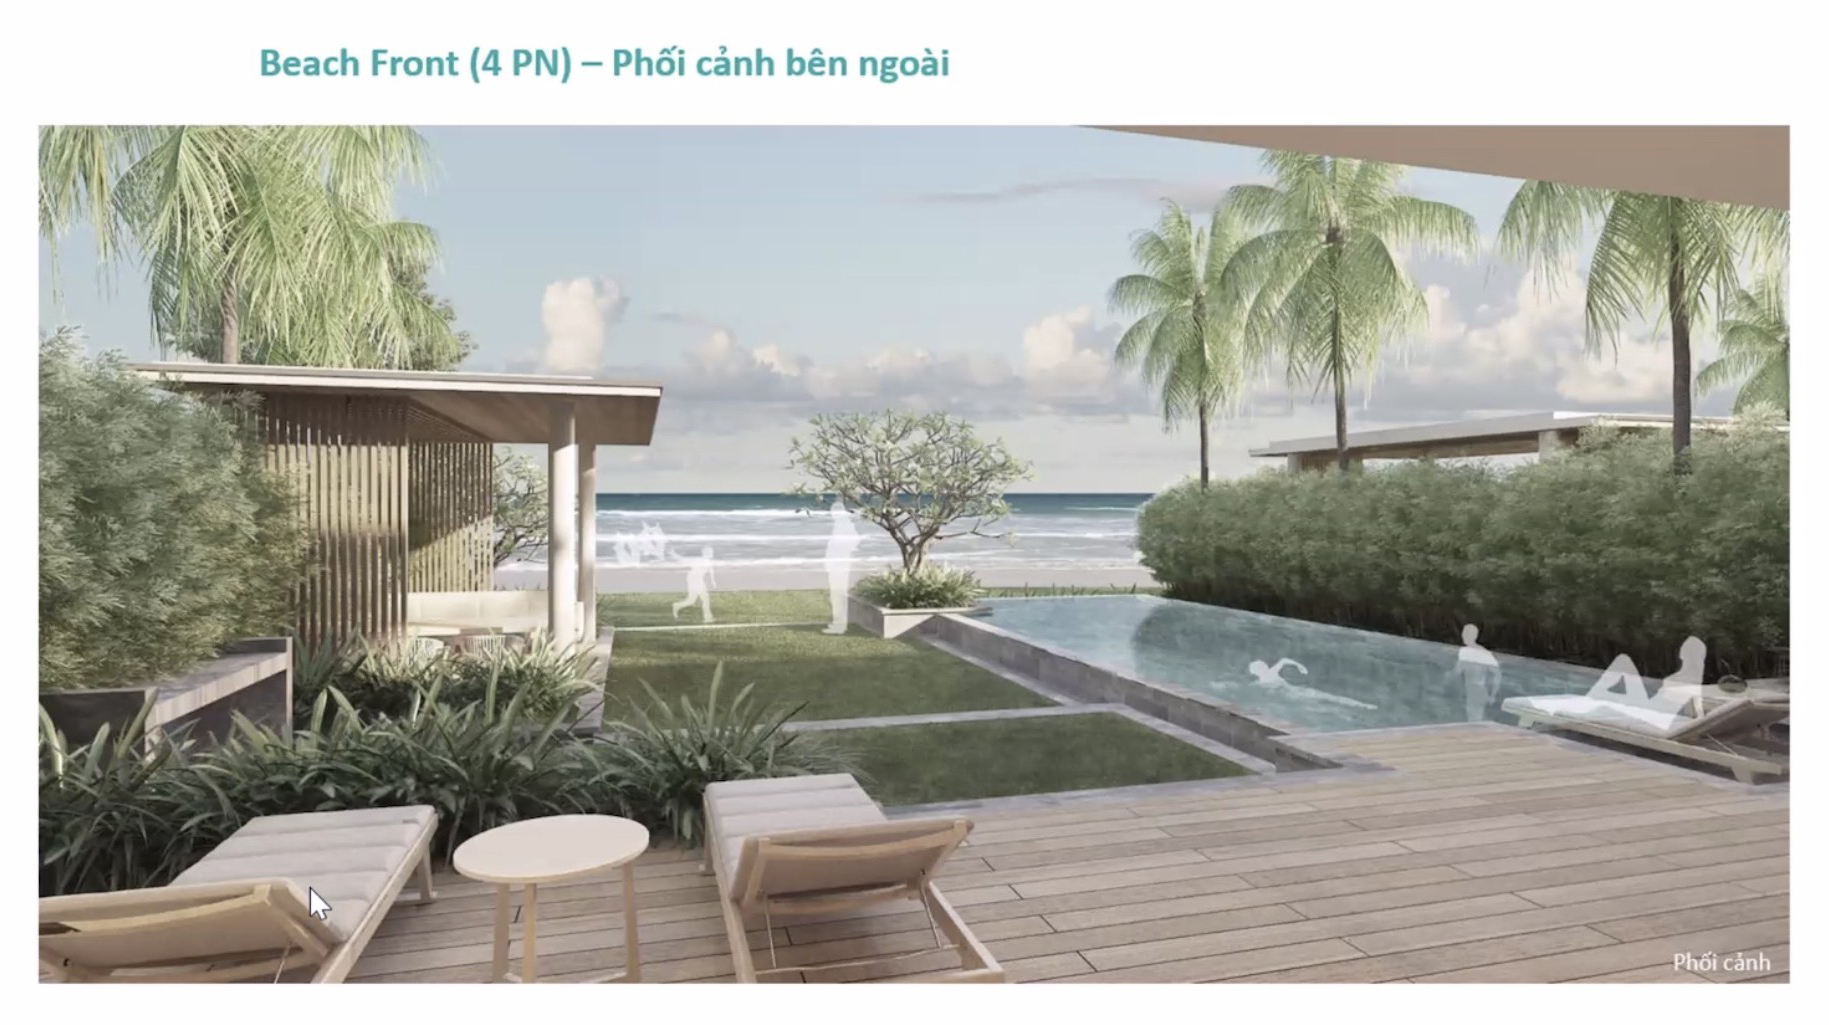 beach front 4PN - phoi canh ben ngoai - 2